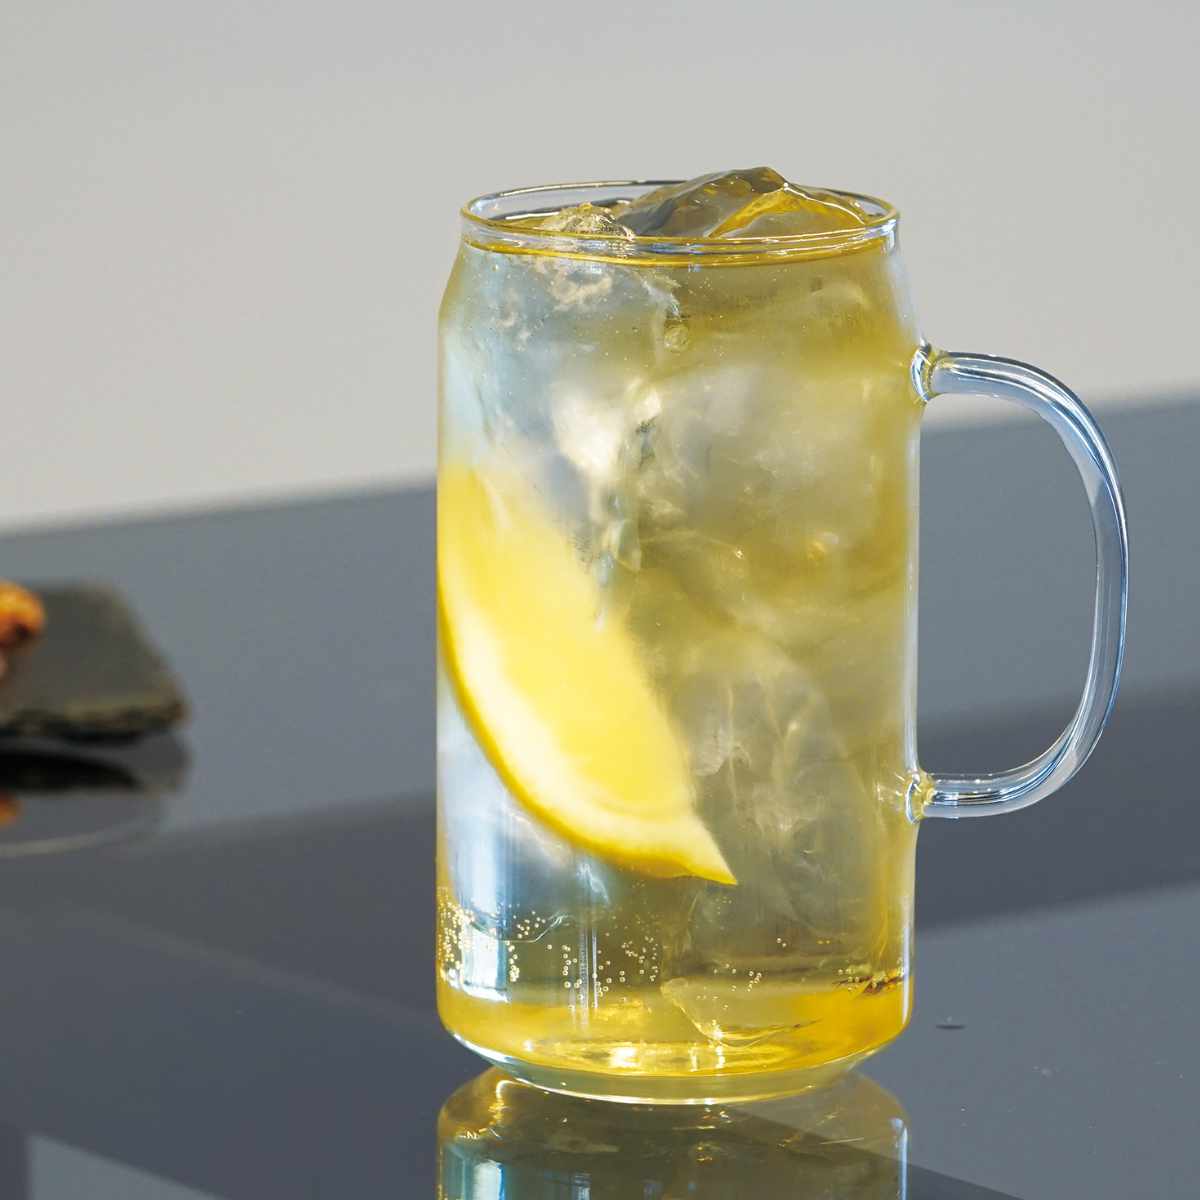 ハリオ グラス 450ml カン型 耐熱ガラス （ HARIO 食洗機対応 電子レンジ対応 カップ コップ ガラス アイス ホット ドリンク 耐熱 缶 ア